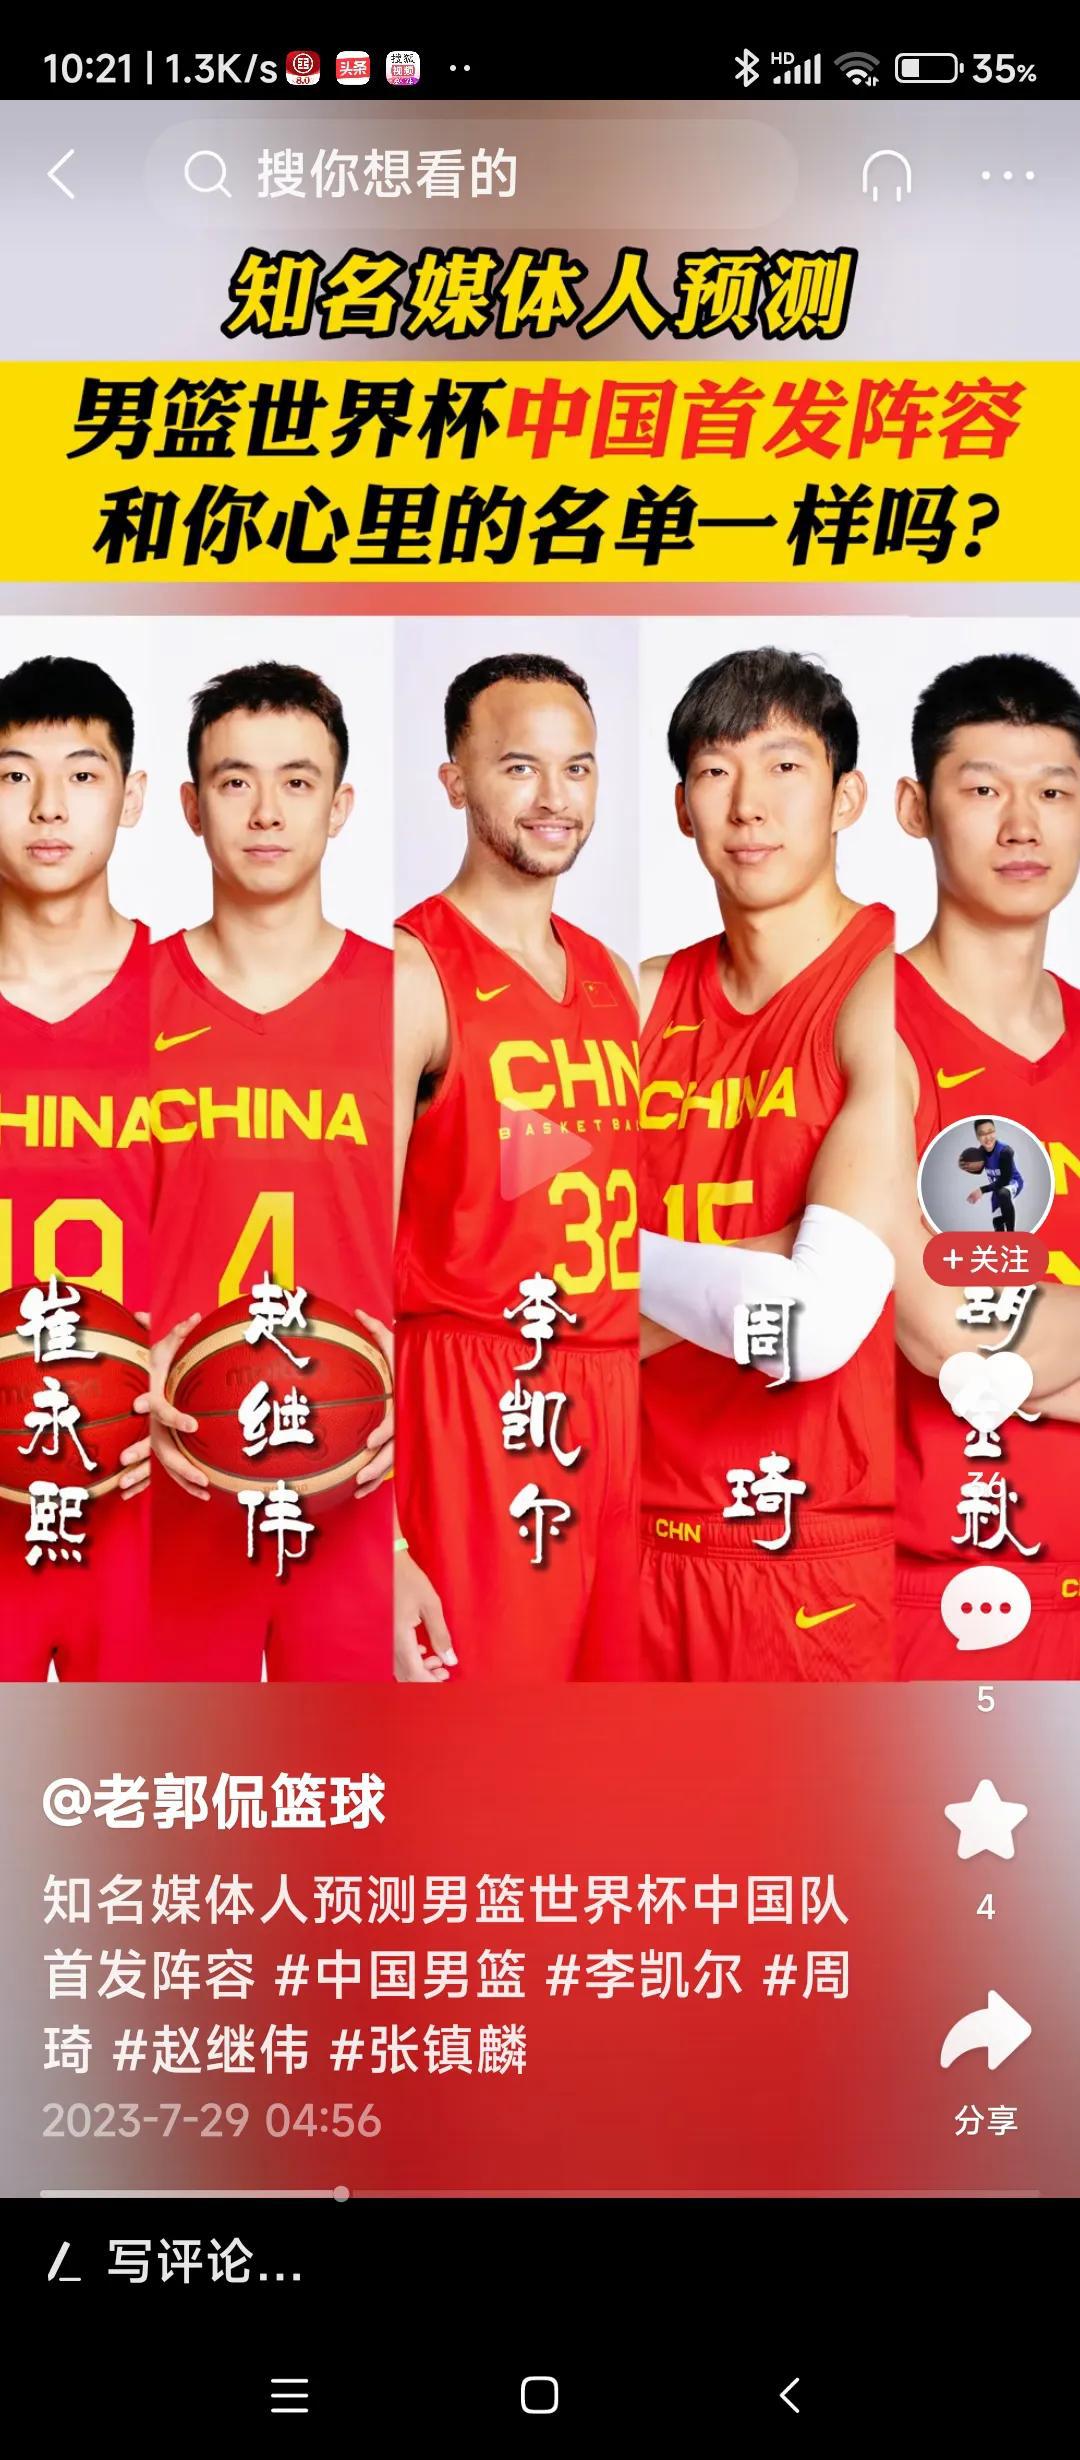 别说赌气话，谁来，中国男篮也拿不到冠军！
球迷的共同心愿并非中国队必须拿世界杯冠